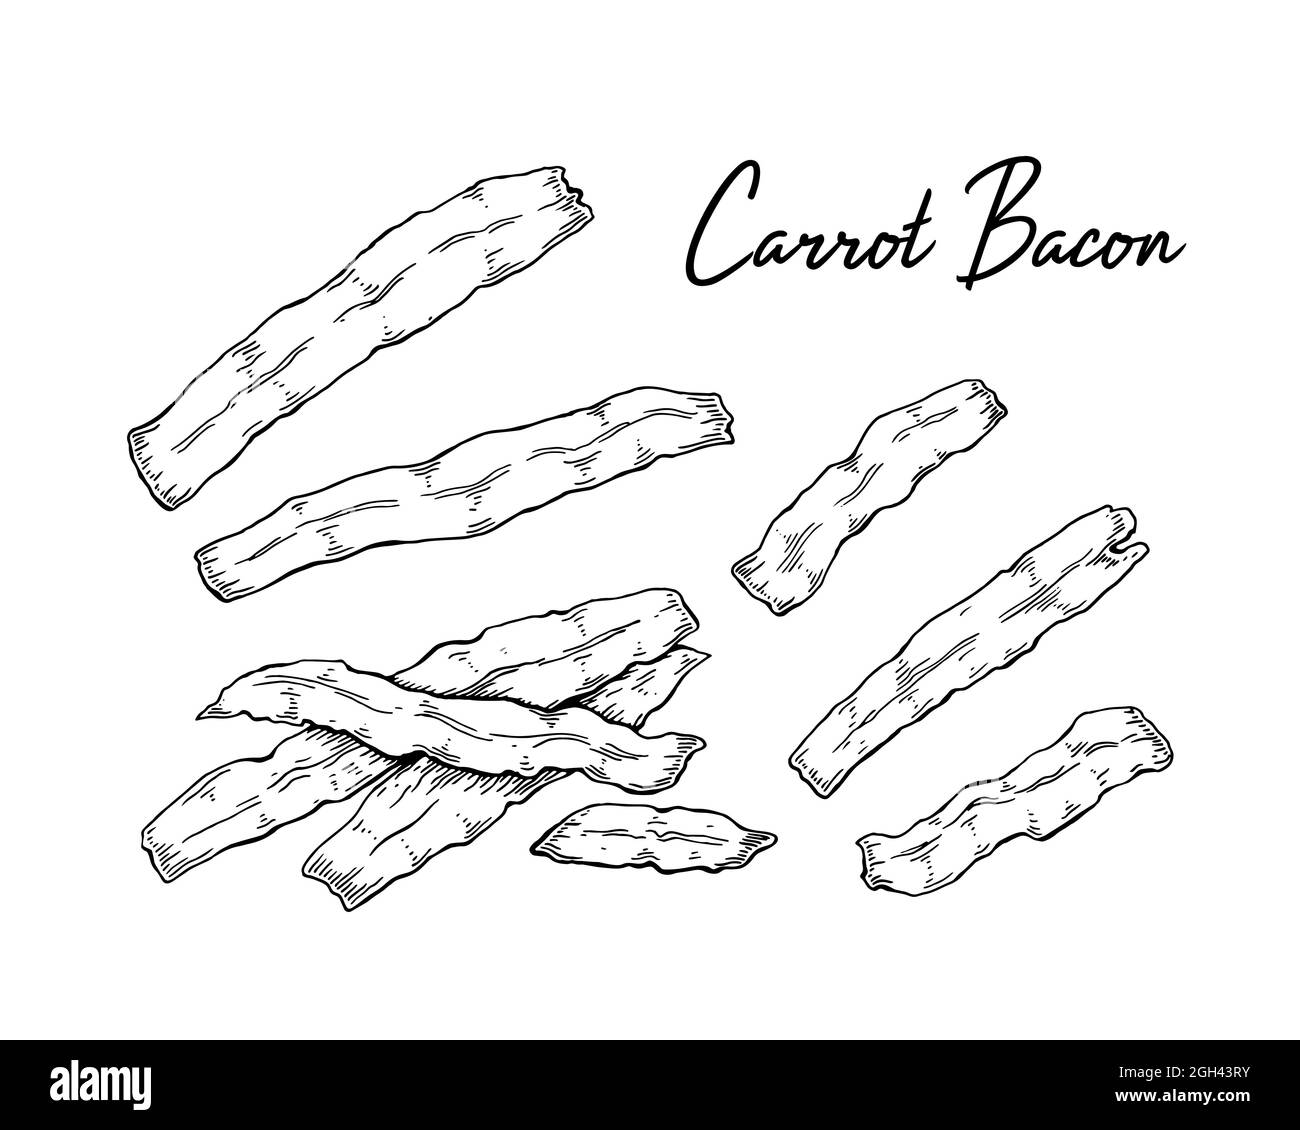 Bacon de carotte tiré à la main. Illustration vectorielle dans le style d'esquisse Illustration de Vecteur